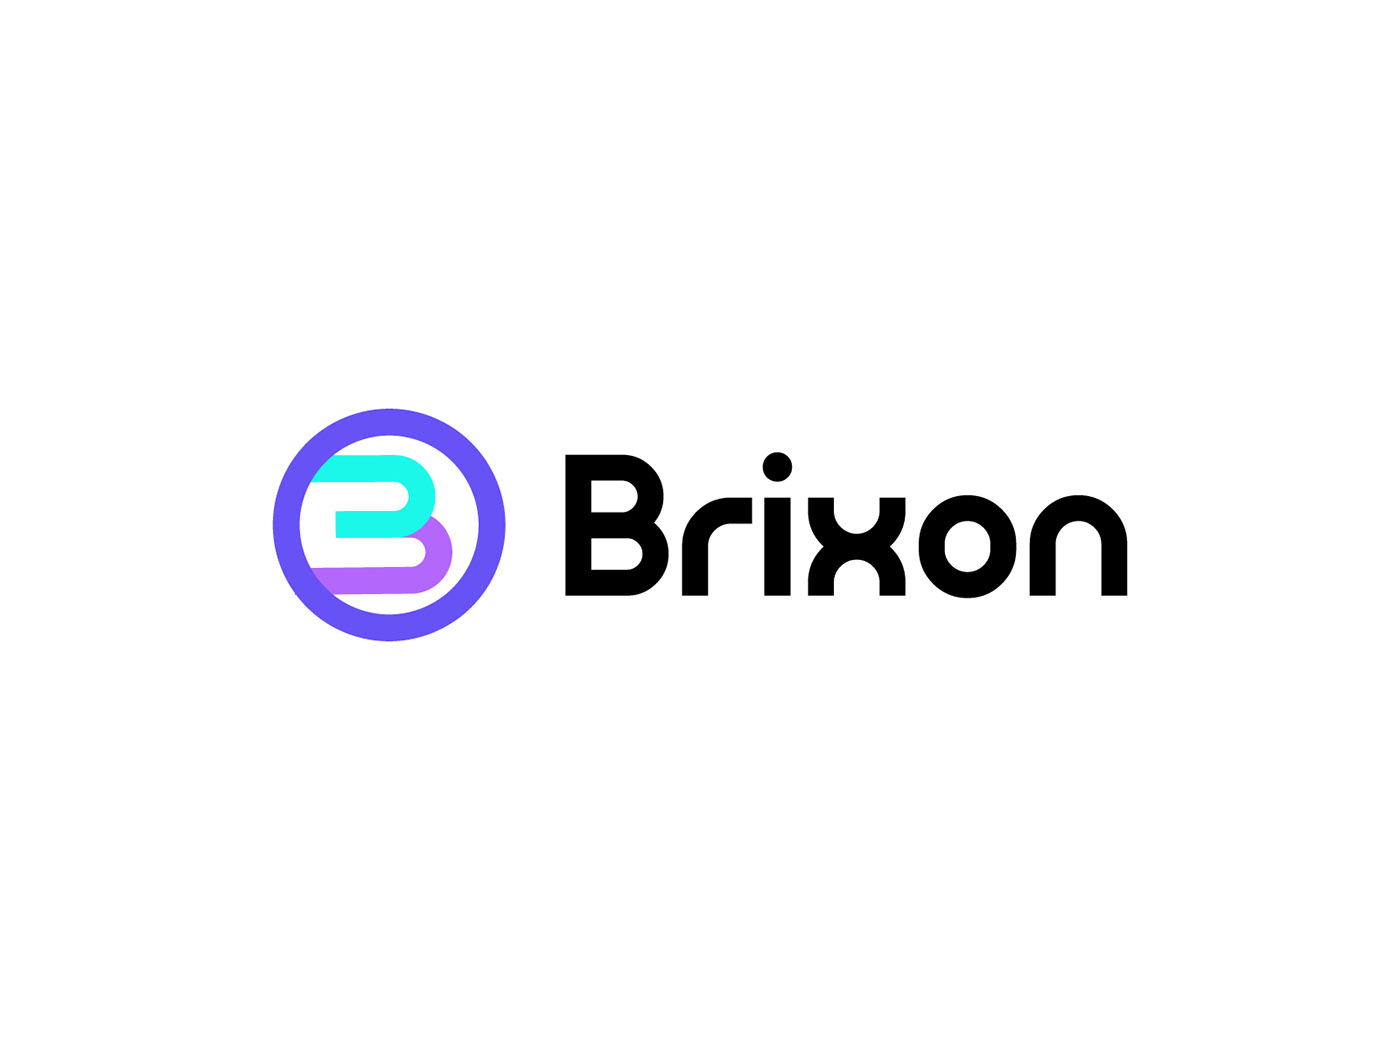 b logo letter logo Logo Design logo designer